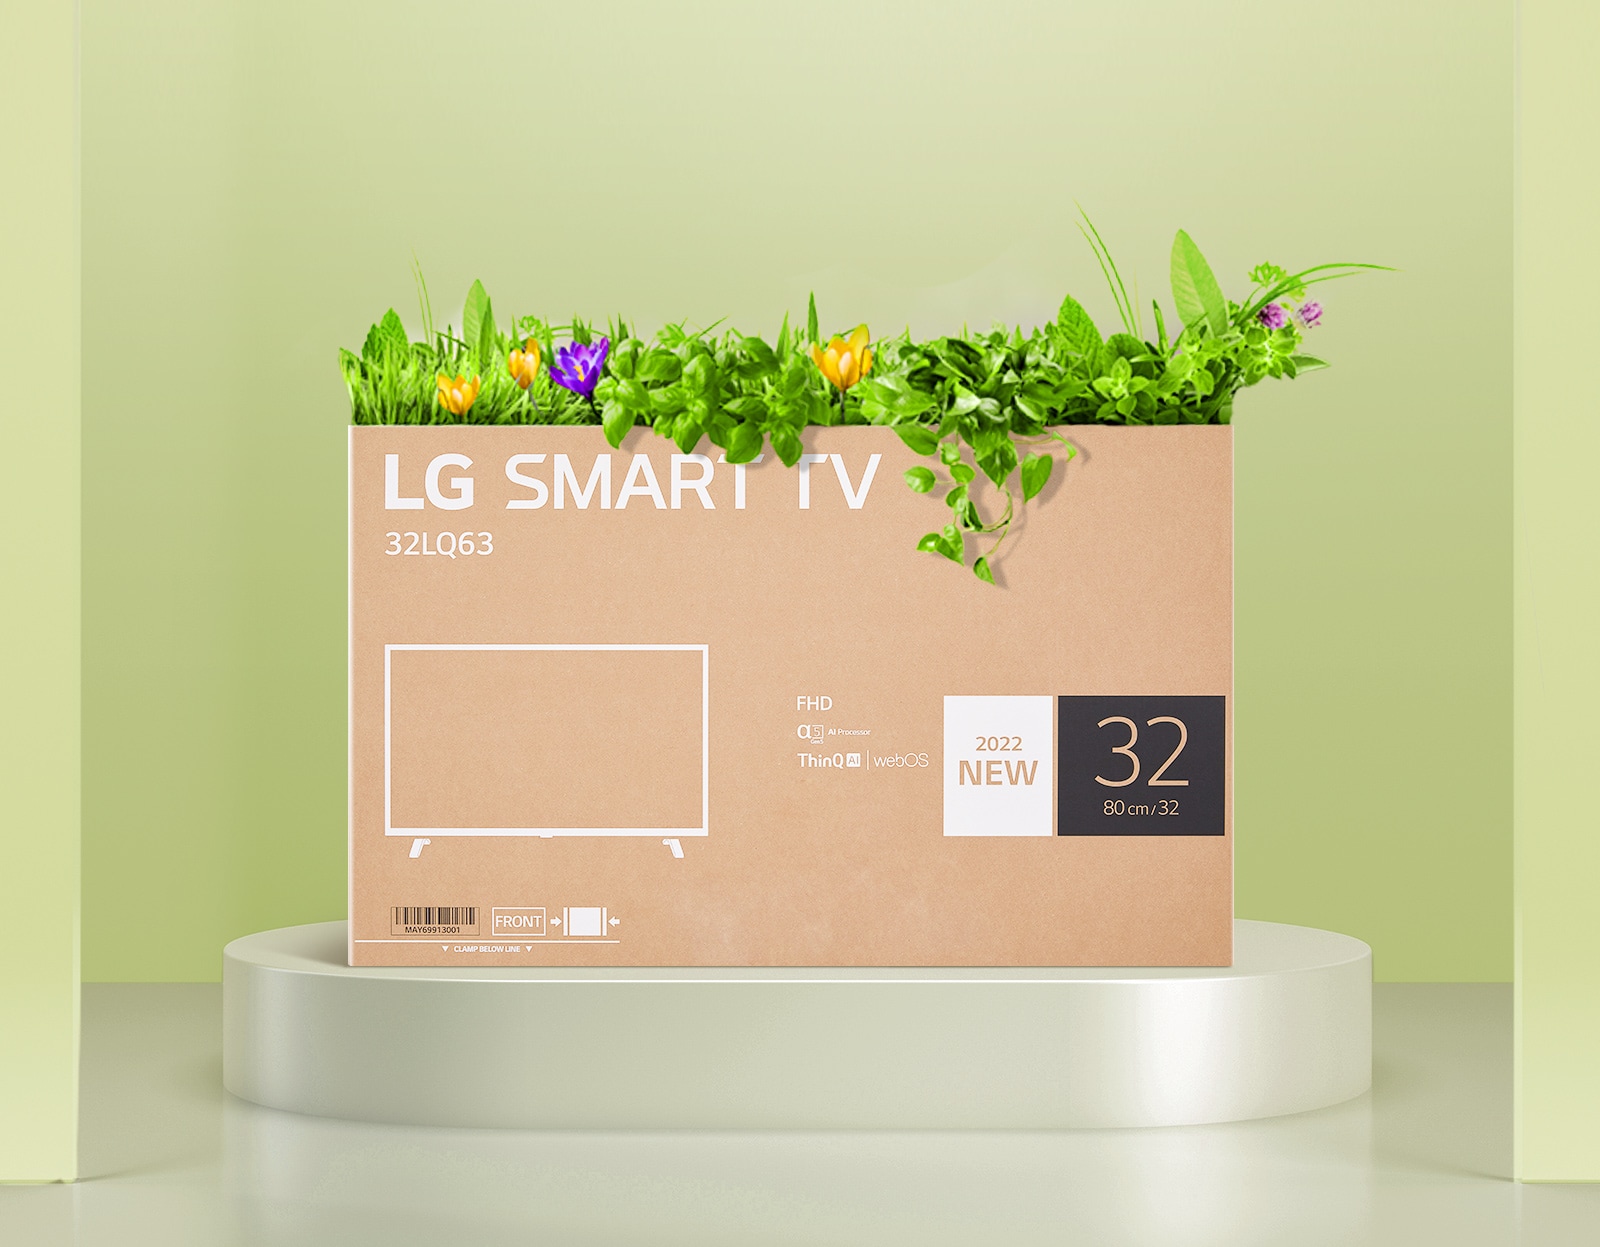 Ящик для цветов, изготовленный из переработанной упаковки монитор LG FHD.